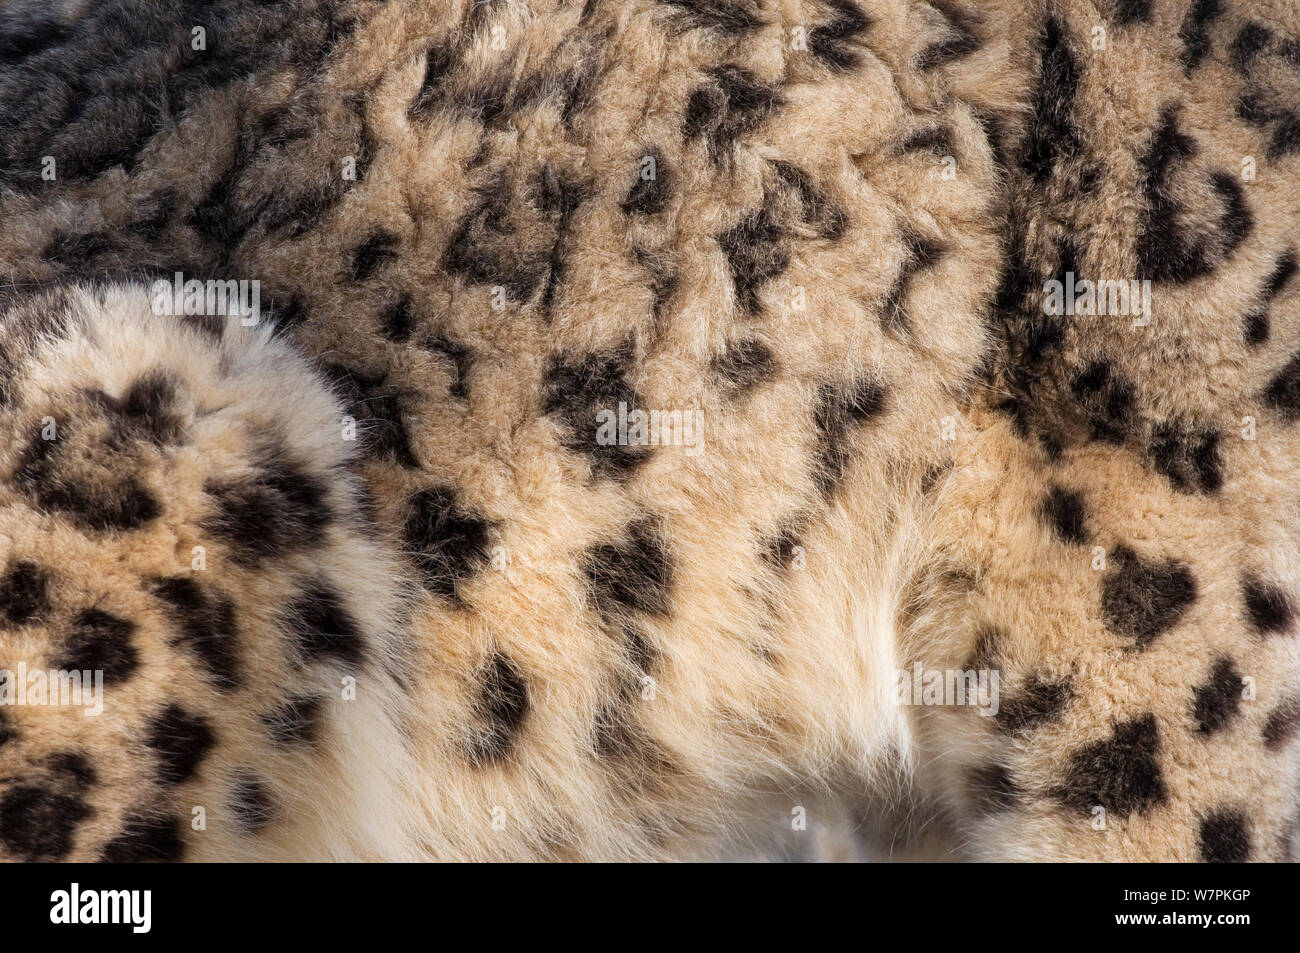 Snow Leopard (Panthera uncia) close up de peau/pelt, captive Banque D'Images